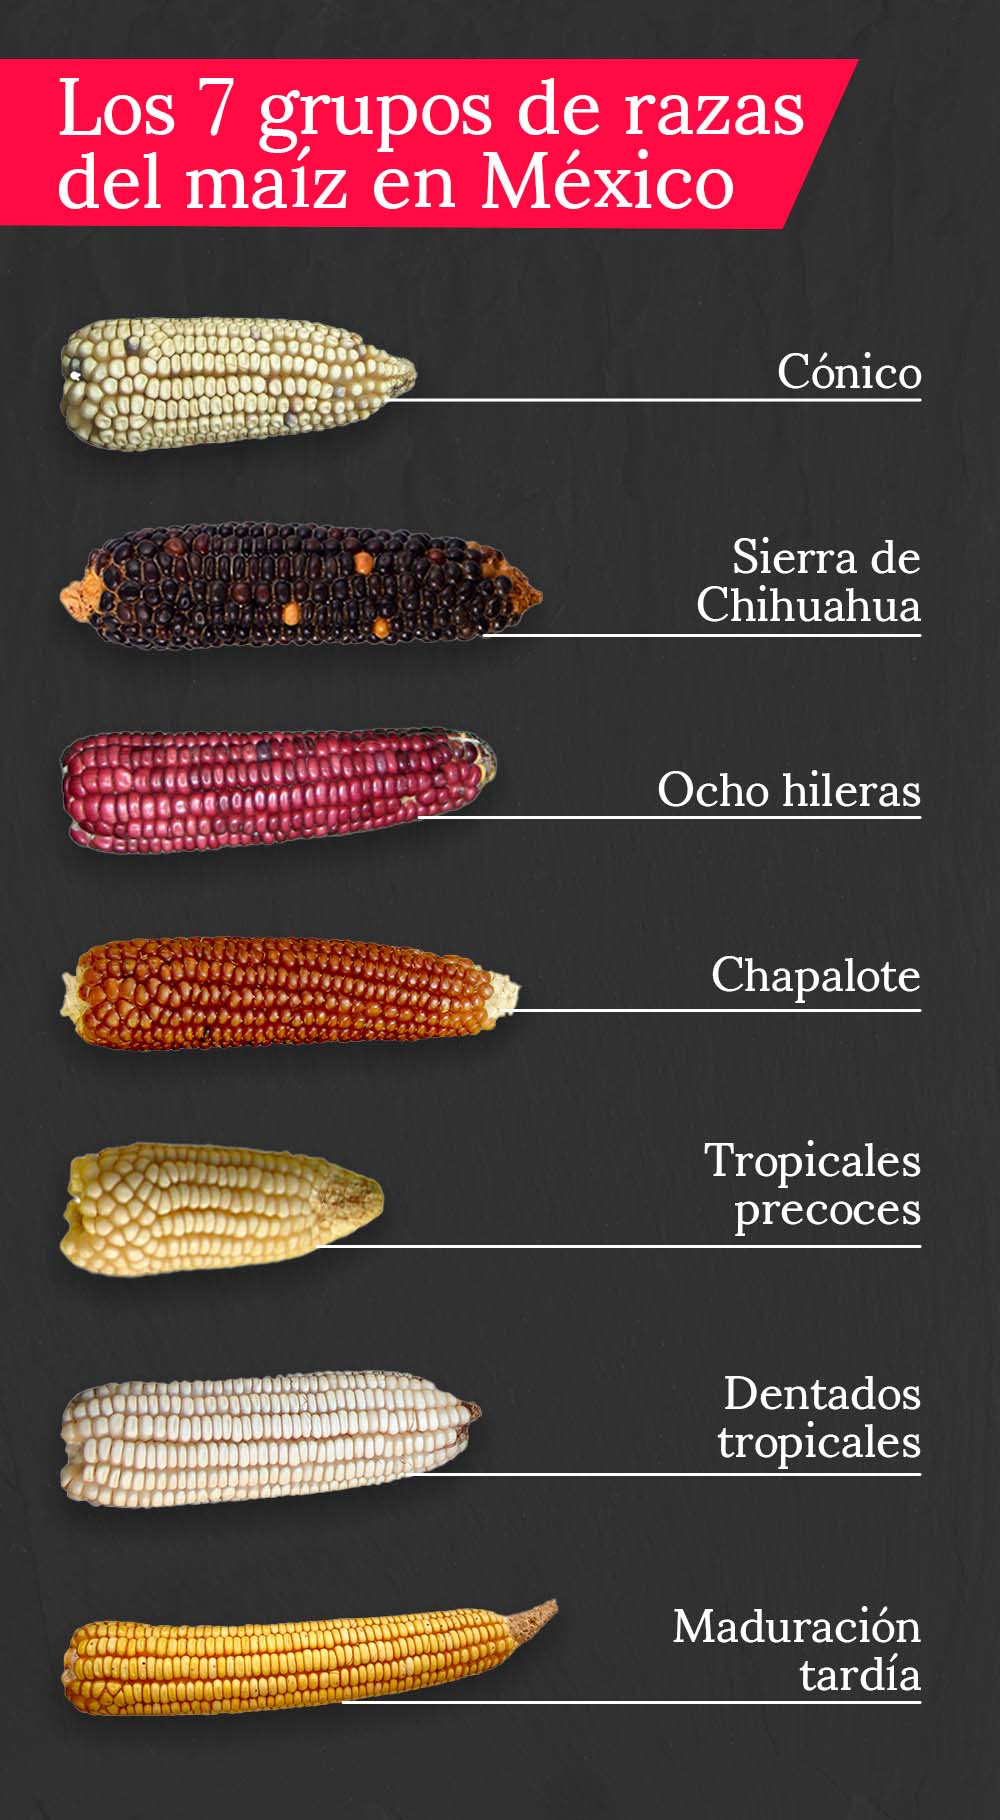 ¿Qué tipo de grano es el maíz?